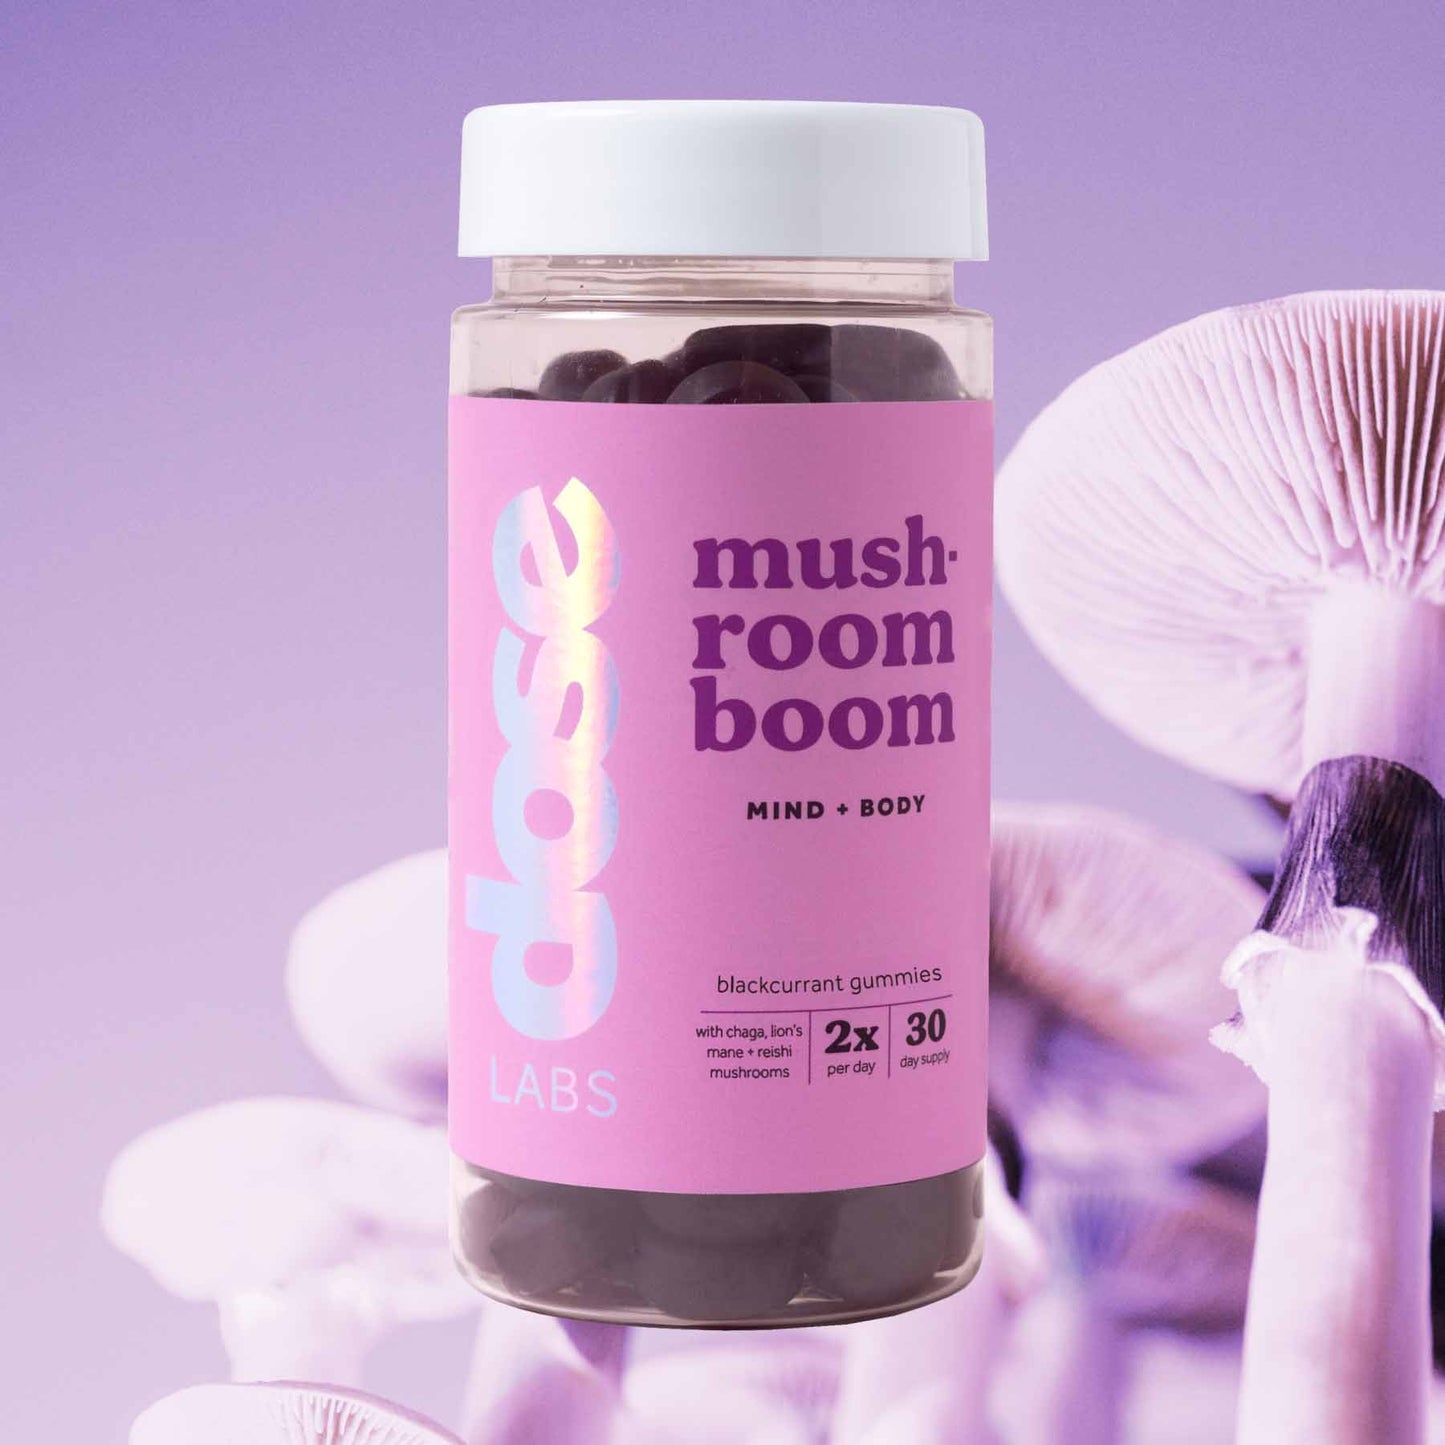 mushroom boom